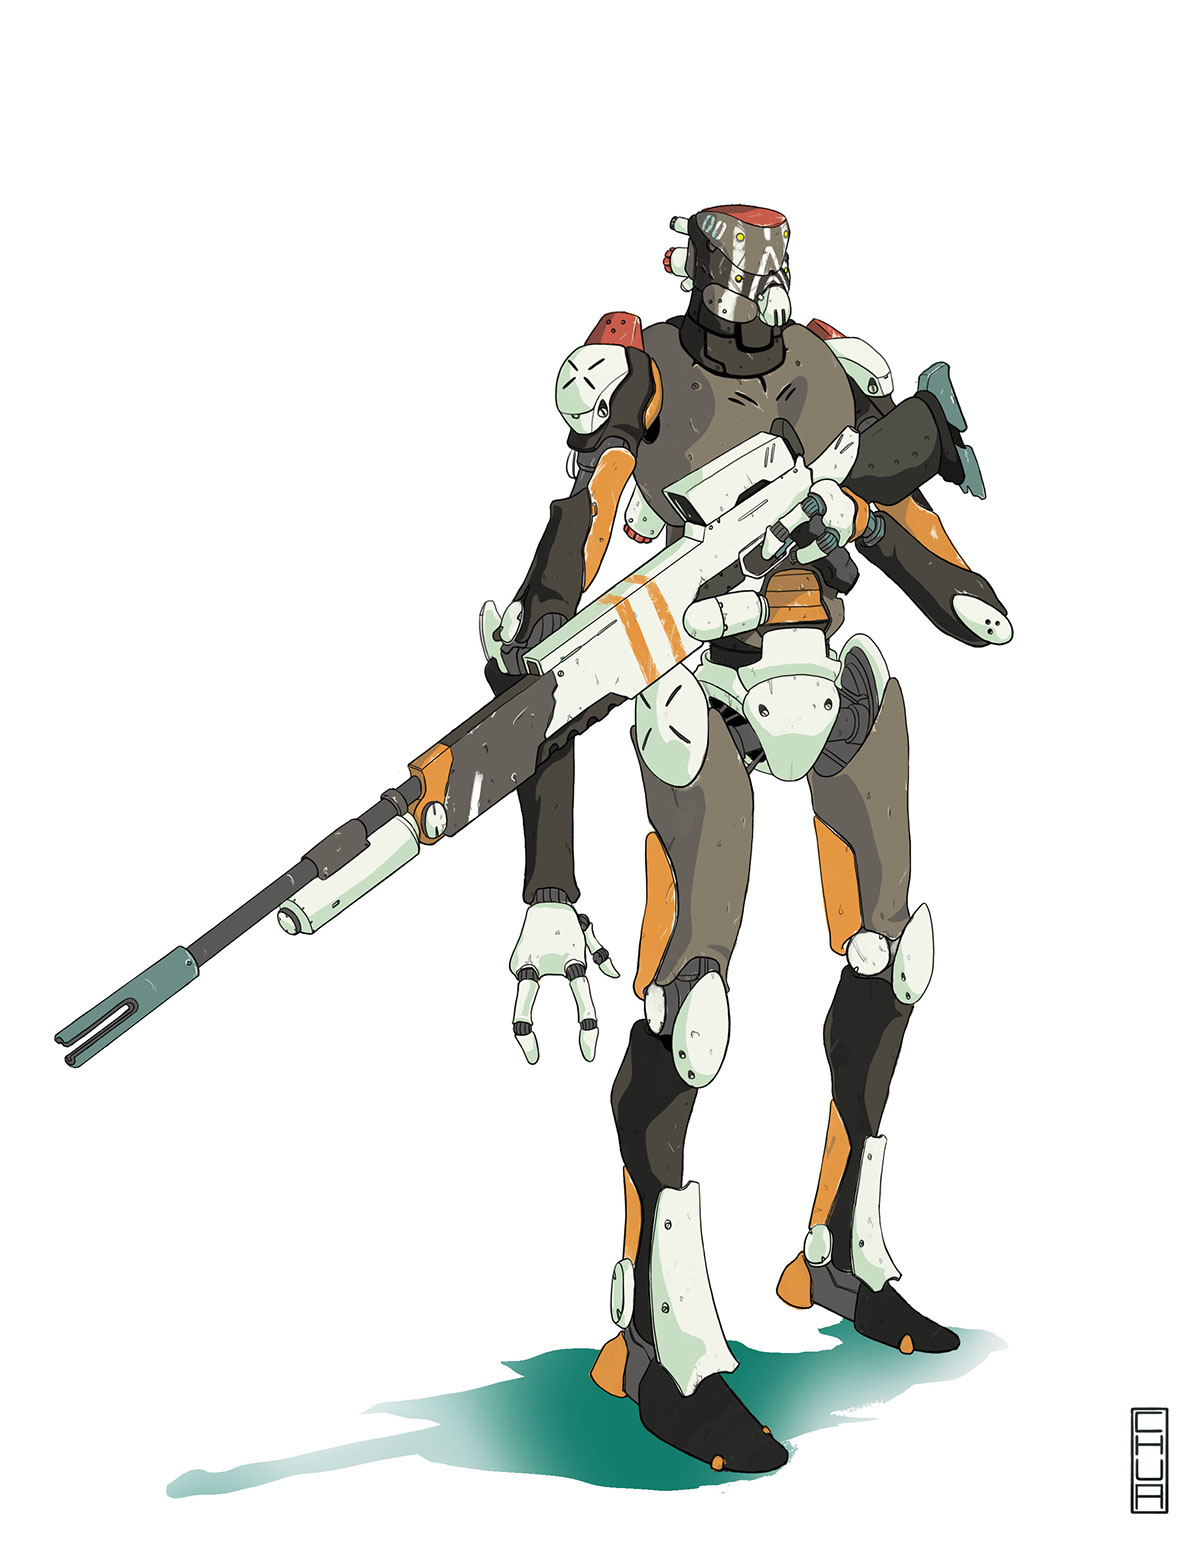 Character concept art concepts robot design future futuristic Sci Fi Military